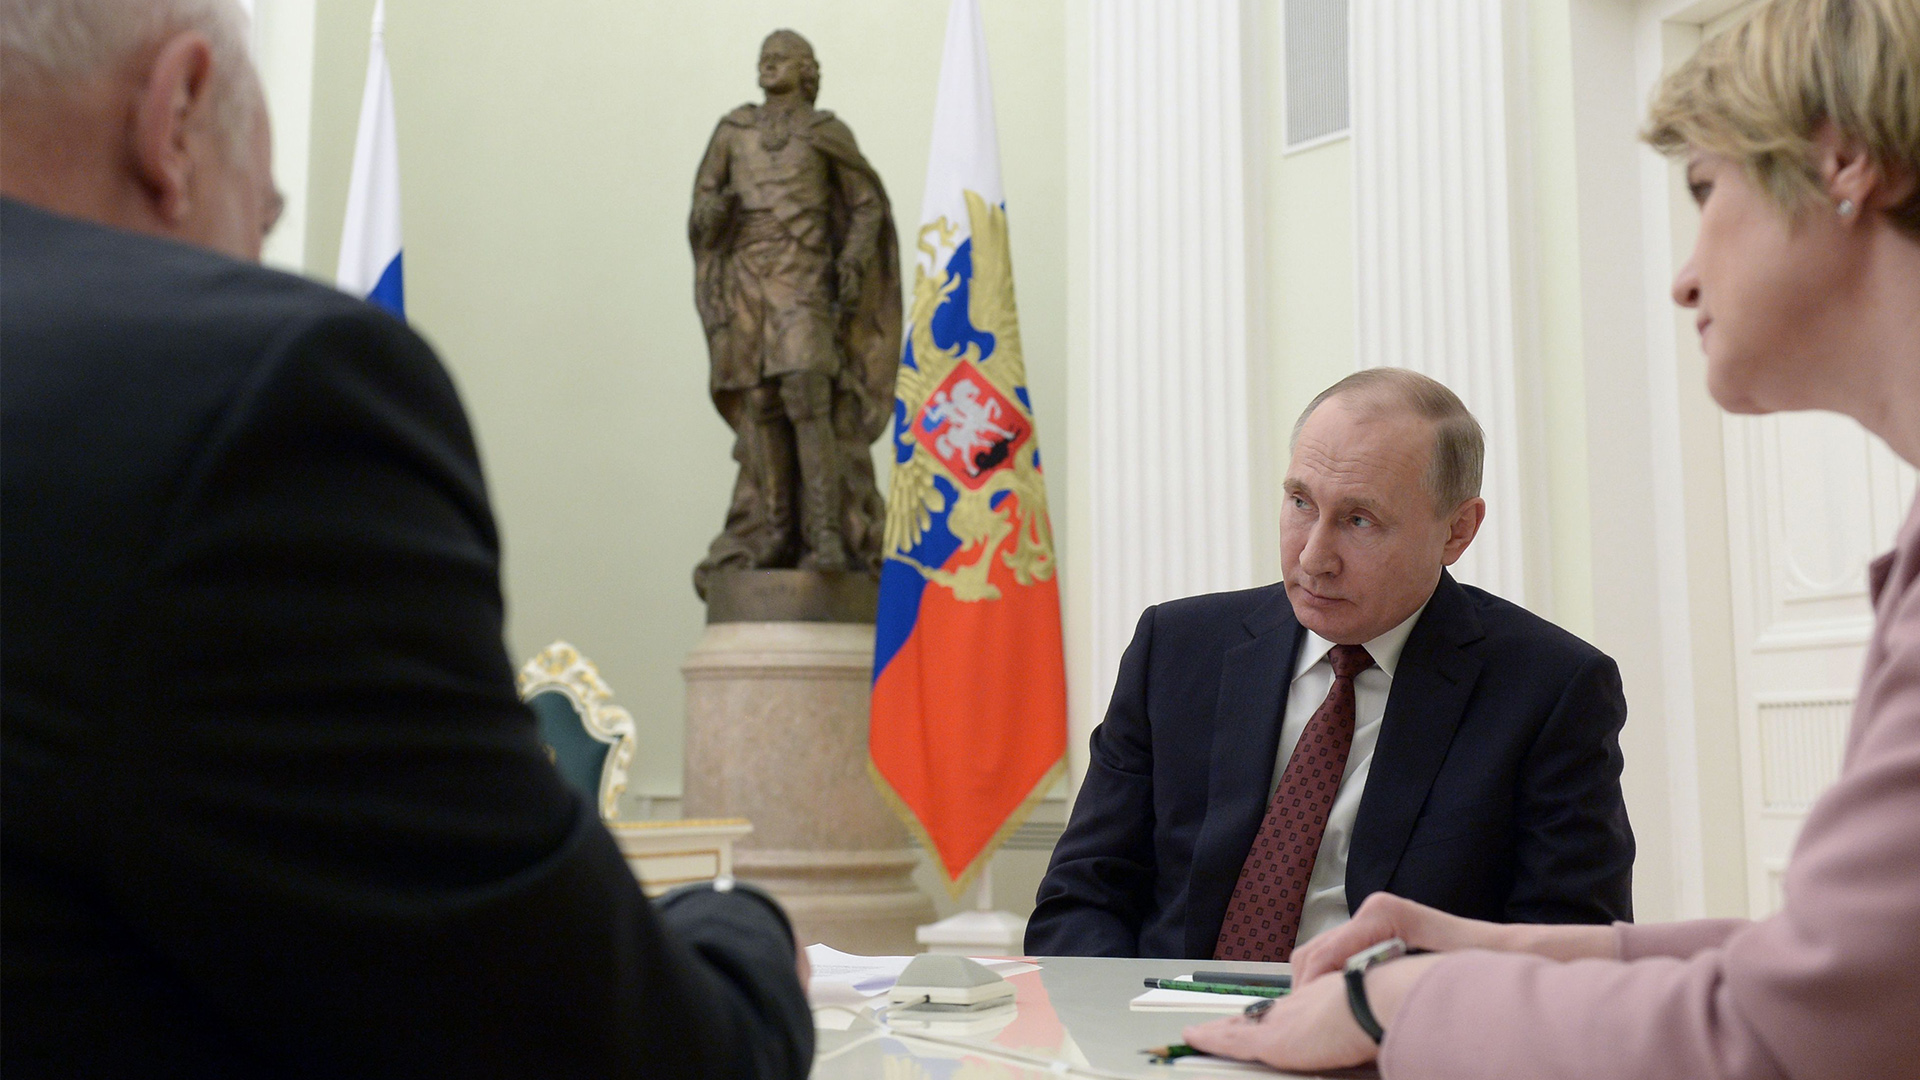 Putin bei einem Treffen nach seiner Wahl  | ALEXEI NIKOLSKY/SPUTNIK/KREMLIN/